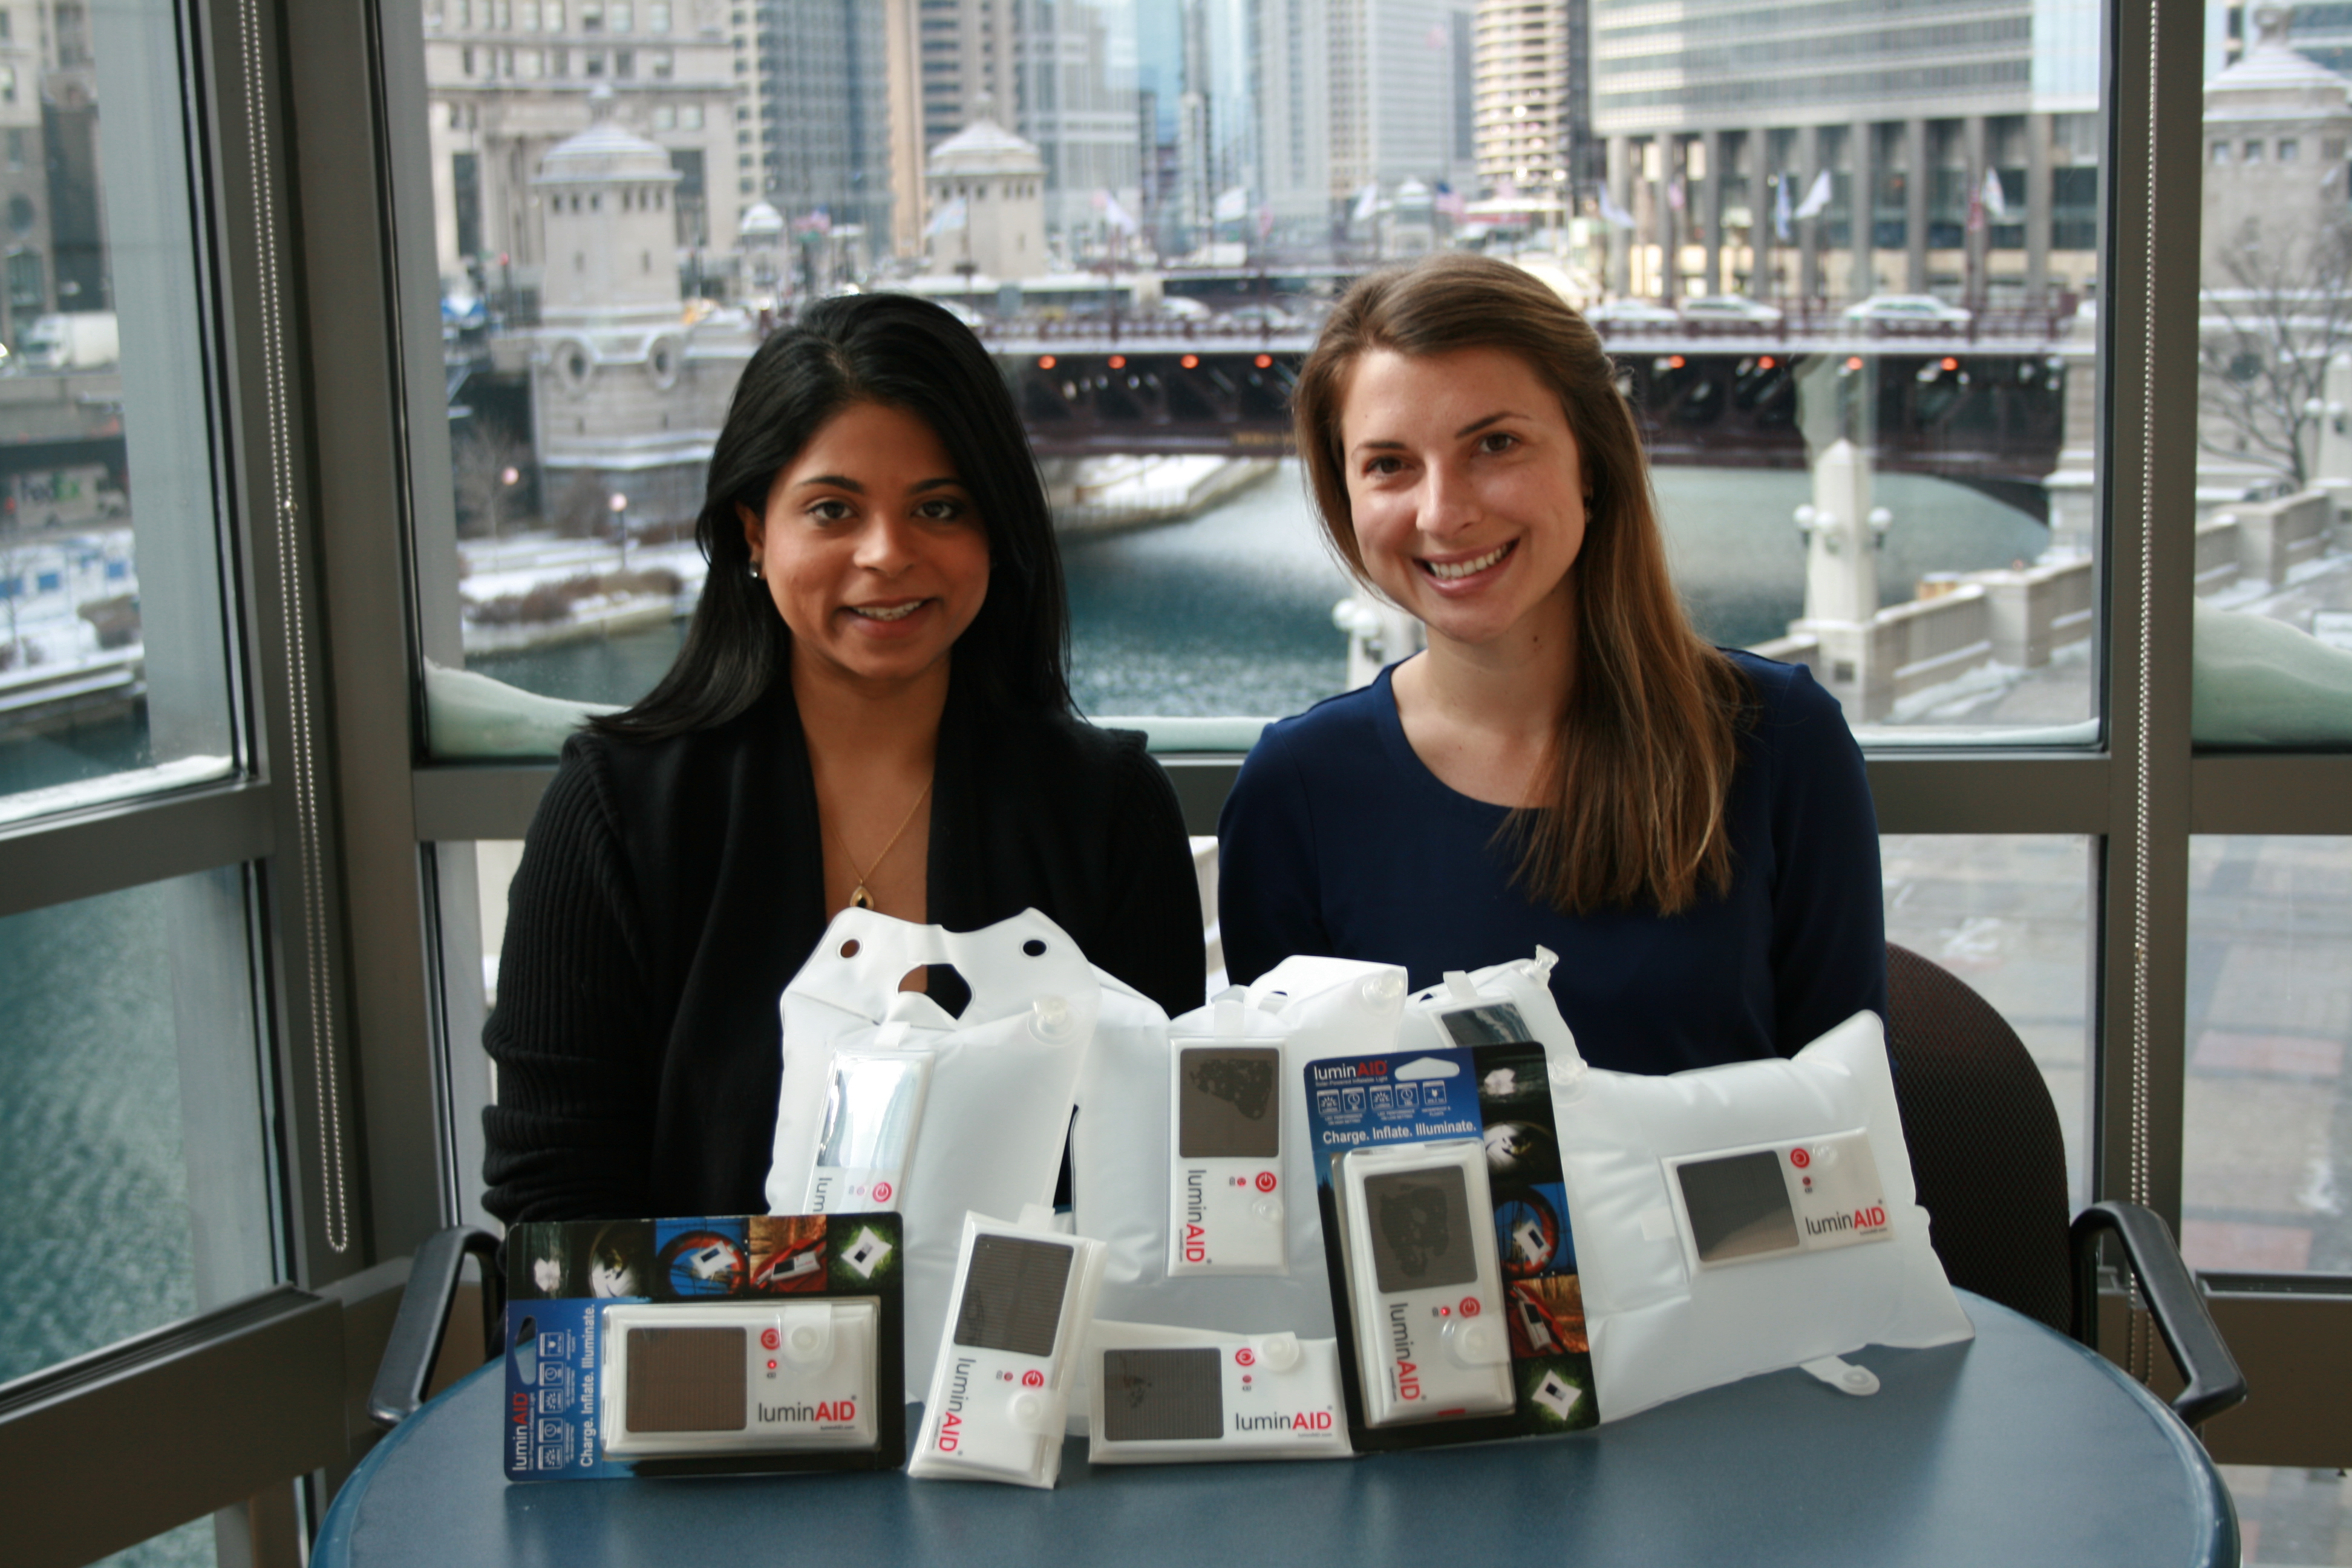 LuminAID Co-Founders Andrea Sreshta (right) and Anna Stork (left)